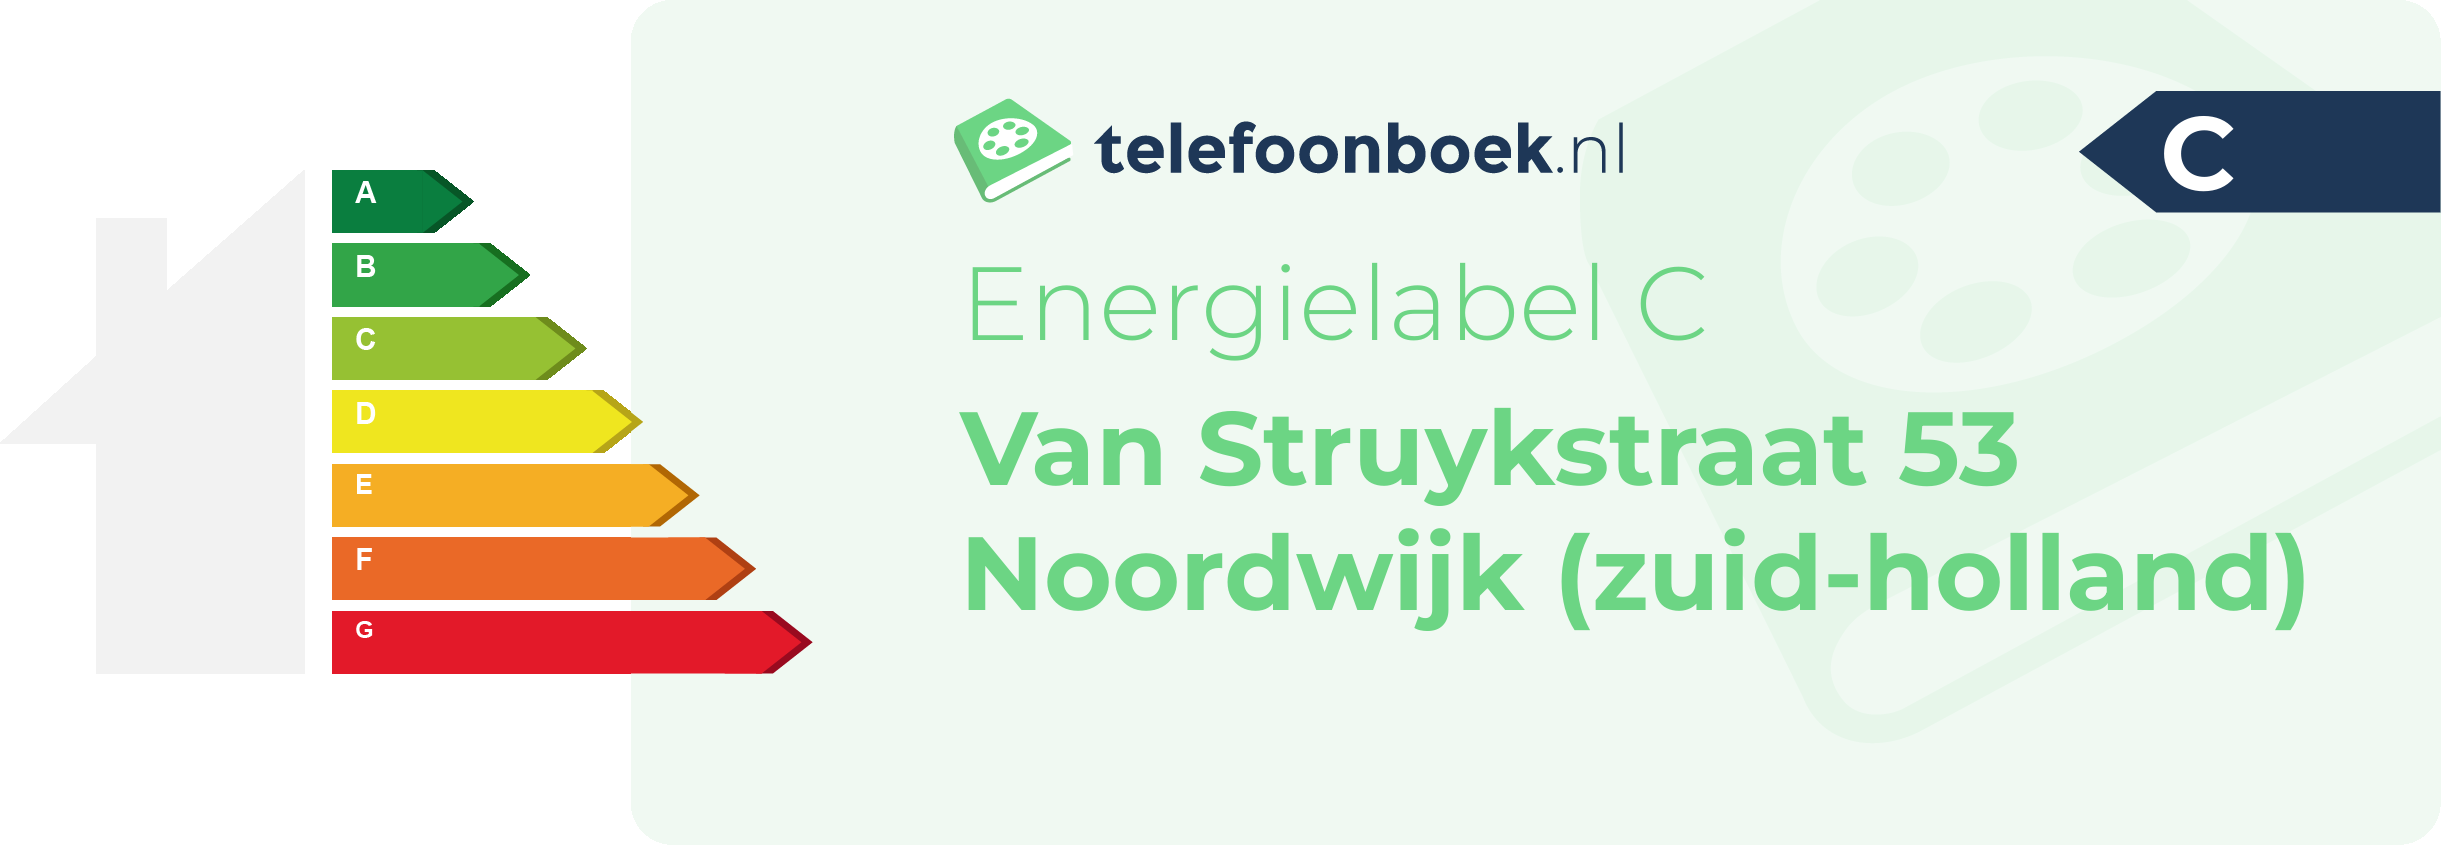 Energielabel Van Struykstraat 53 Noordwijk (Zuid-Holland)